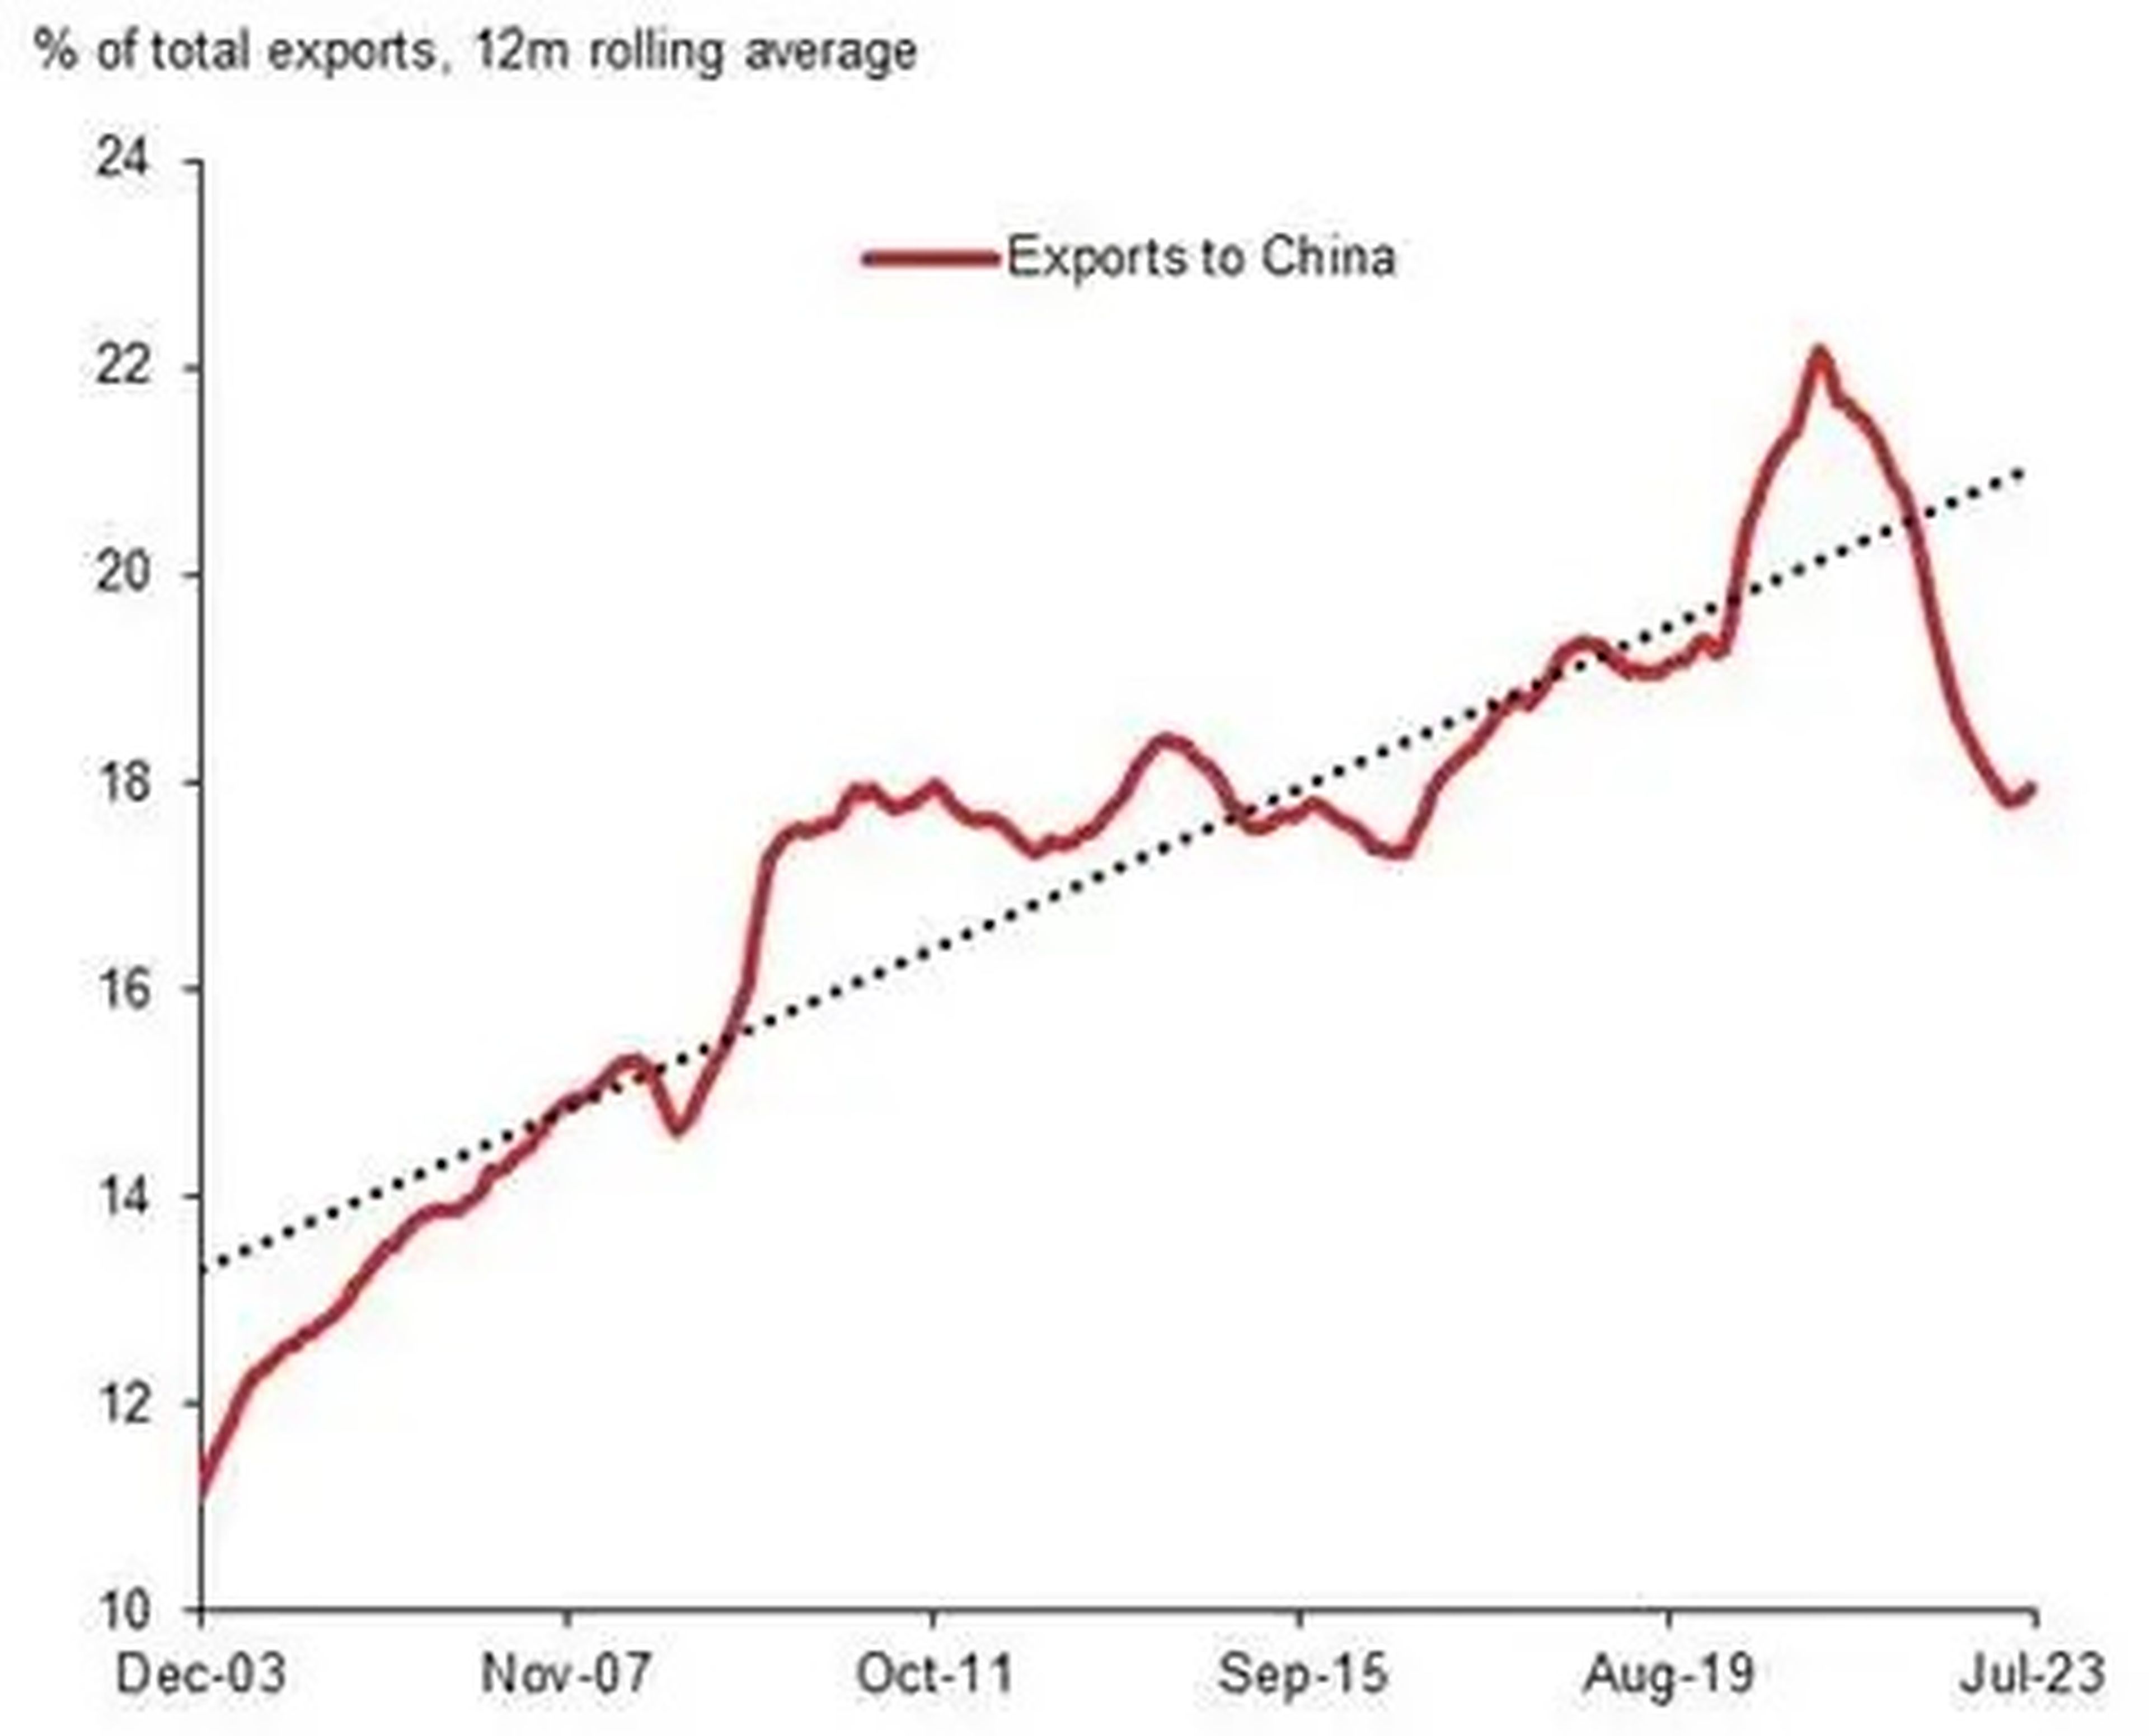 Las exportaciones asiáticas a China como porcentaje de las exportaciones totales han disminuido en los últimos años.